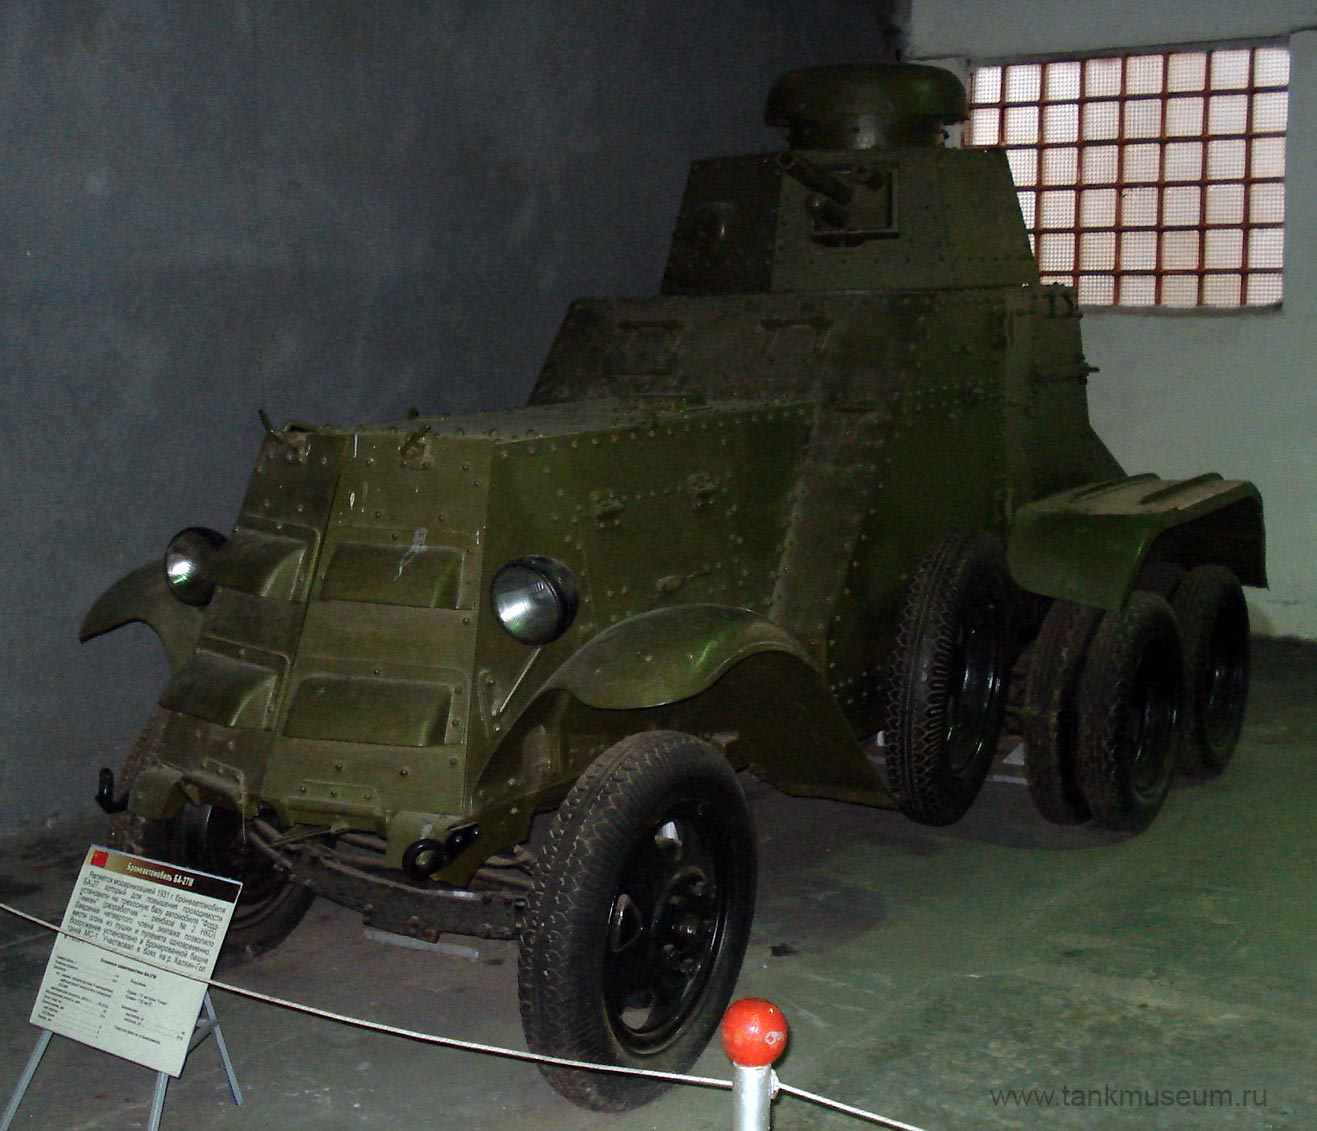 WW2 Armored car BA-27M, tank museum in Kubinka